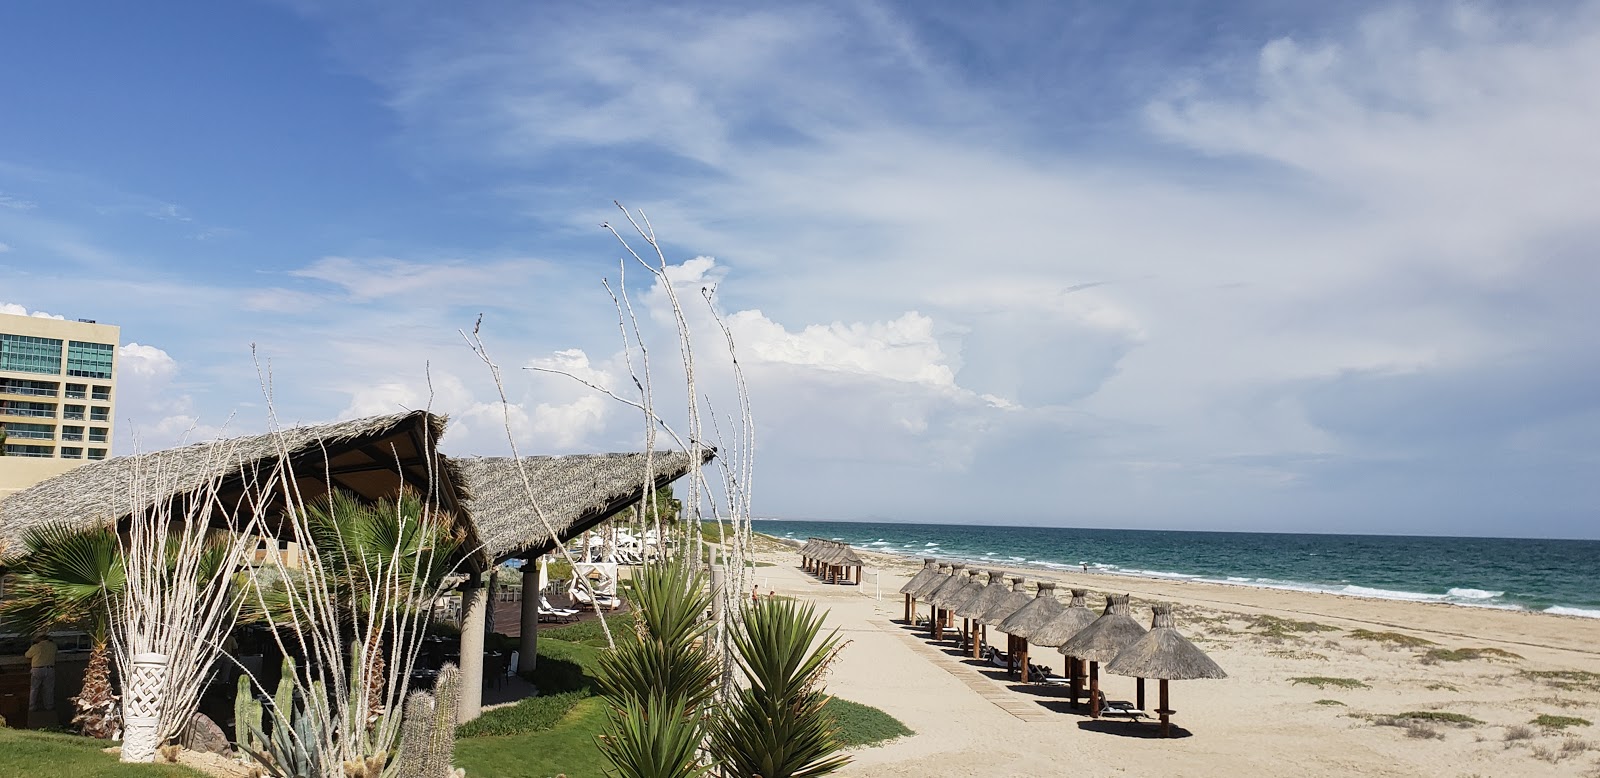 Foto af Playa Mayan med turkis rent vand overflade